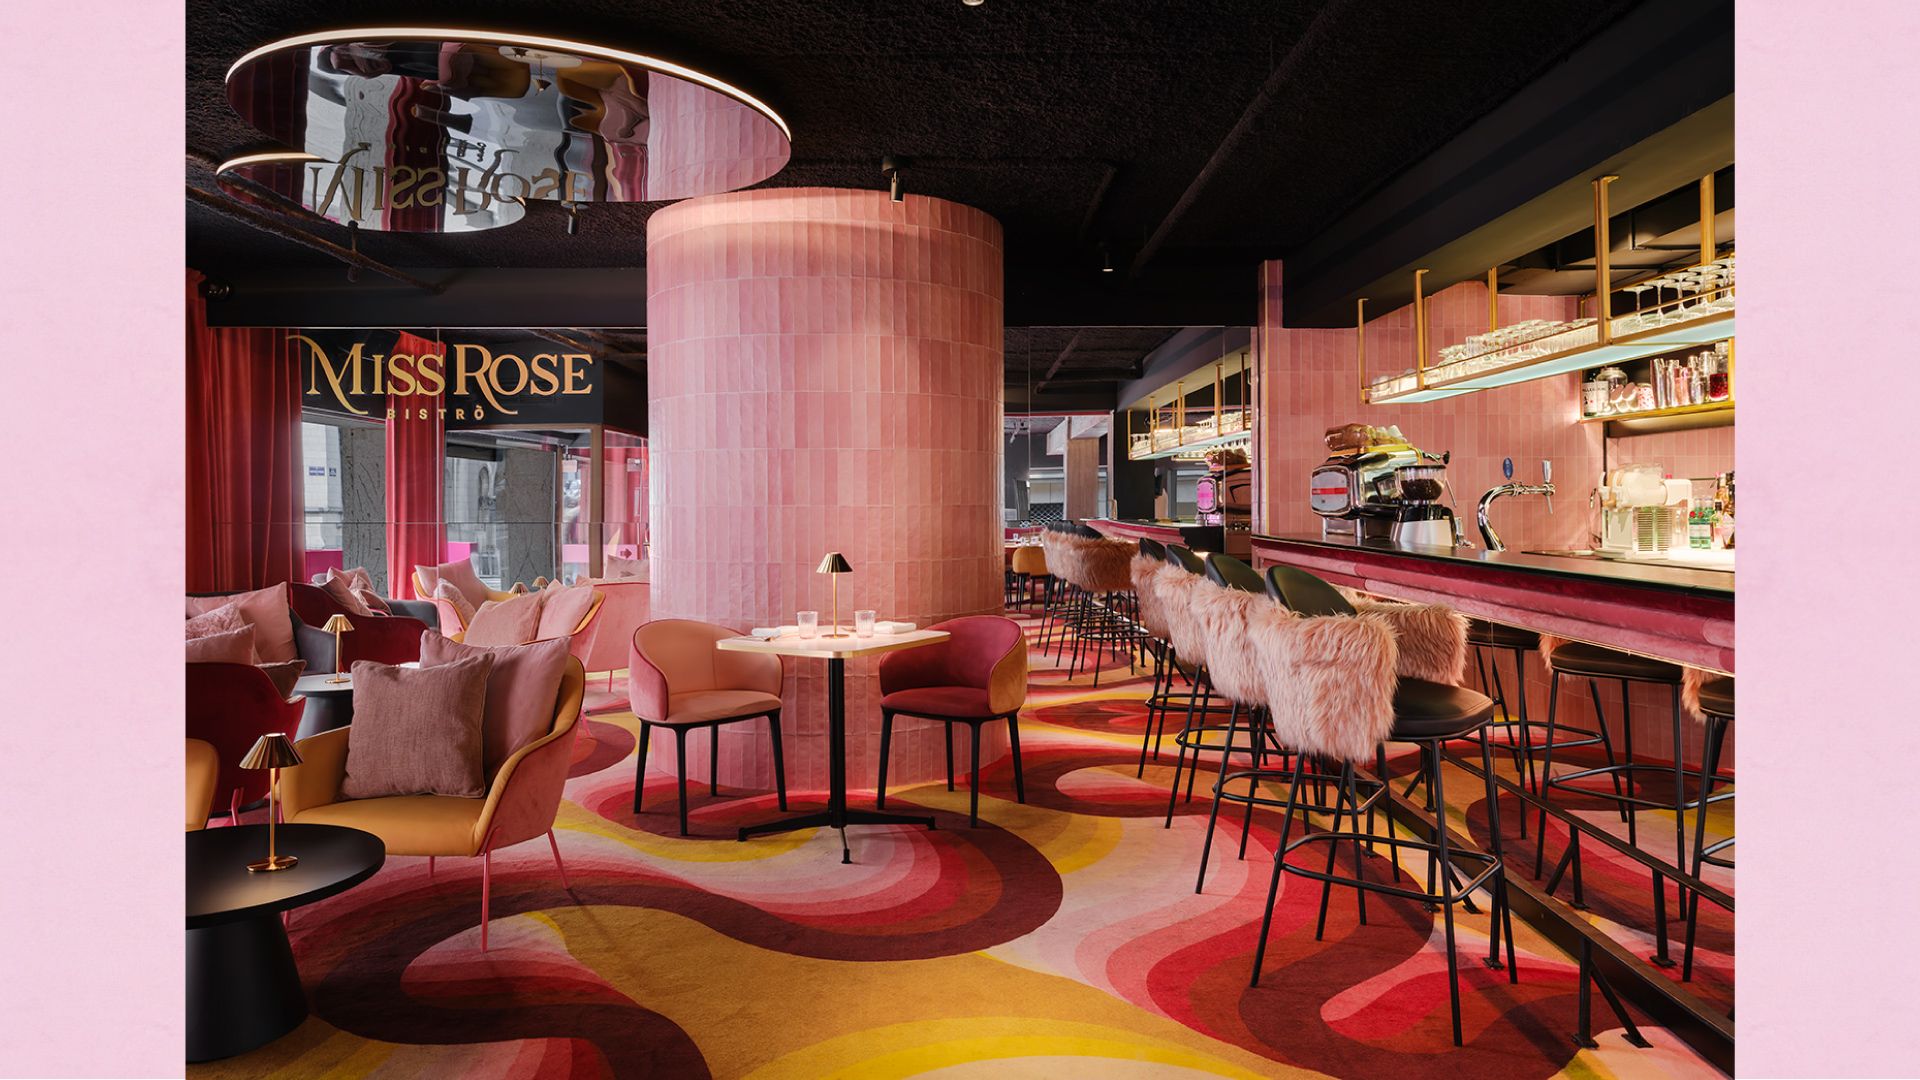 Fornitura di sedute (modello Twin Chair e Masa Lounge) per l'arredamento del Bistrò "Miss Rose", Bruxelles - Belgio. Studio di progettazione SUPERSTUDIO 21 - Candidato per il premio "Restaurant & Bar Design Awards"